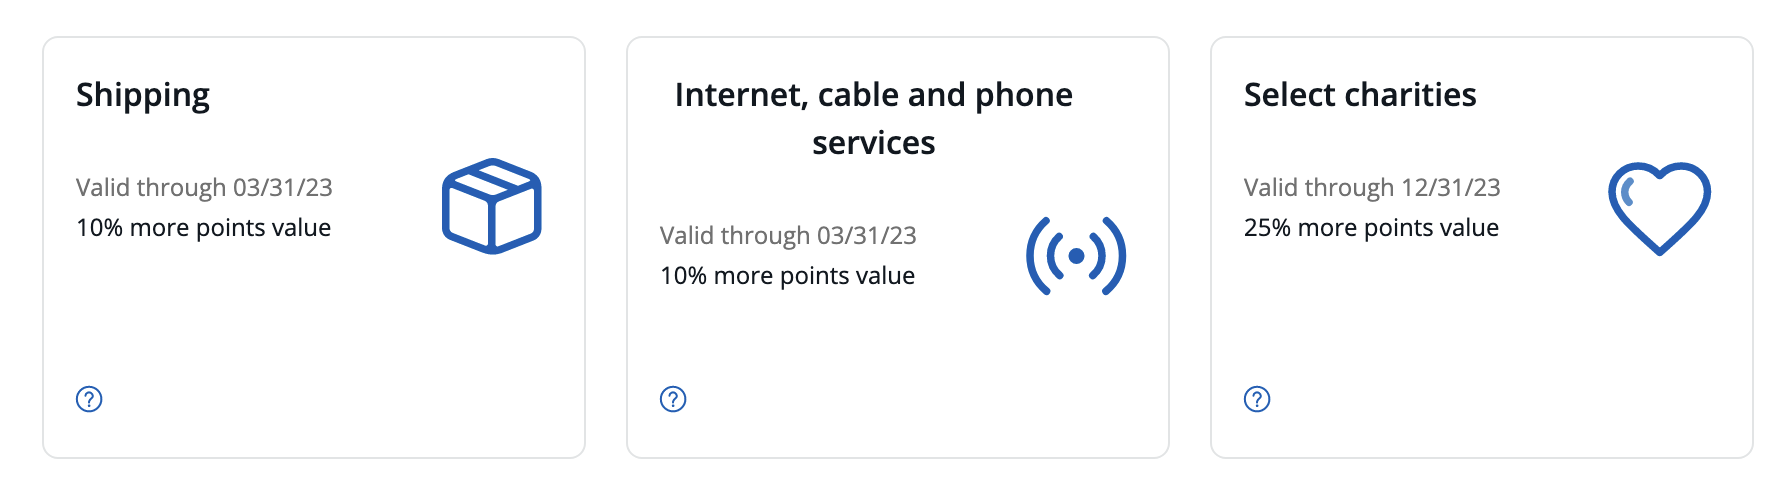 a screenshot of a phone service